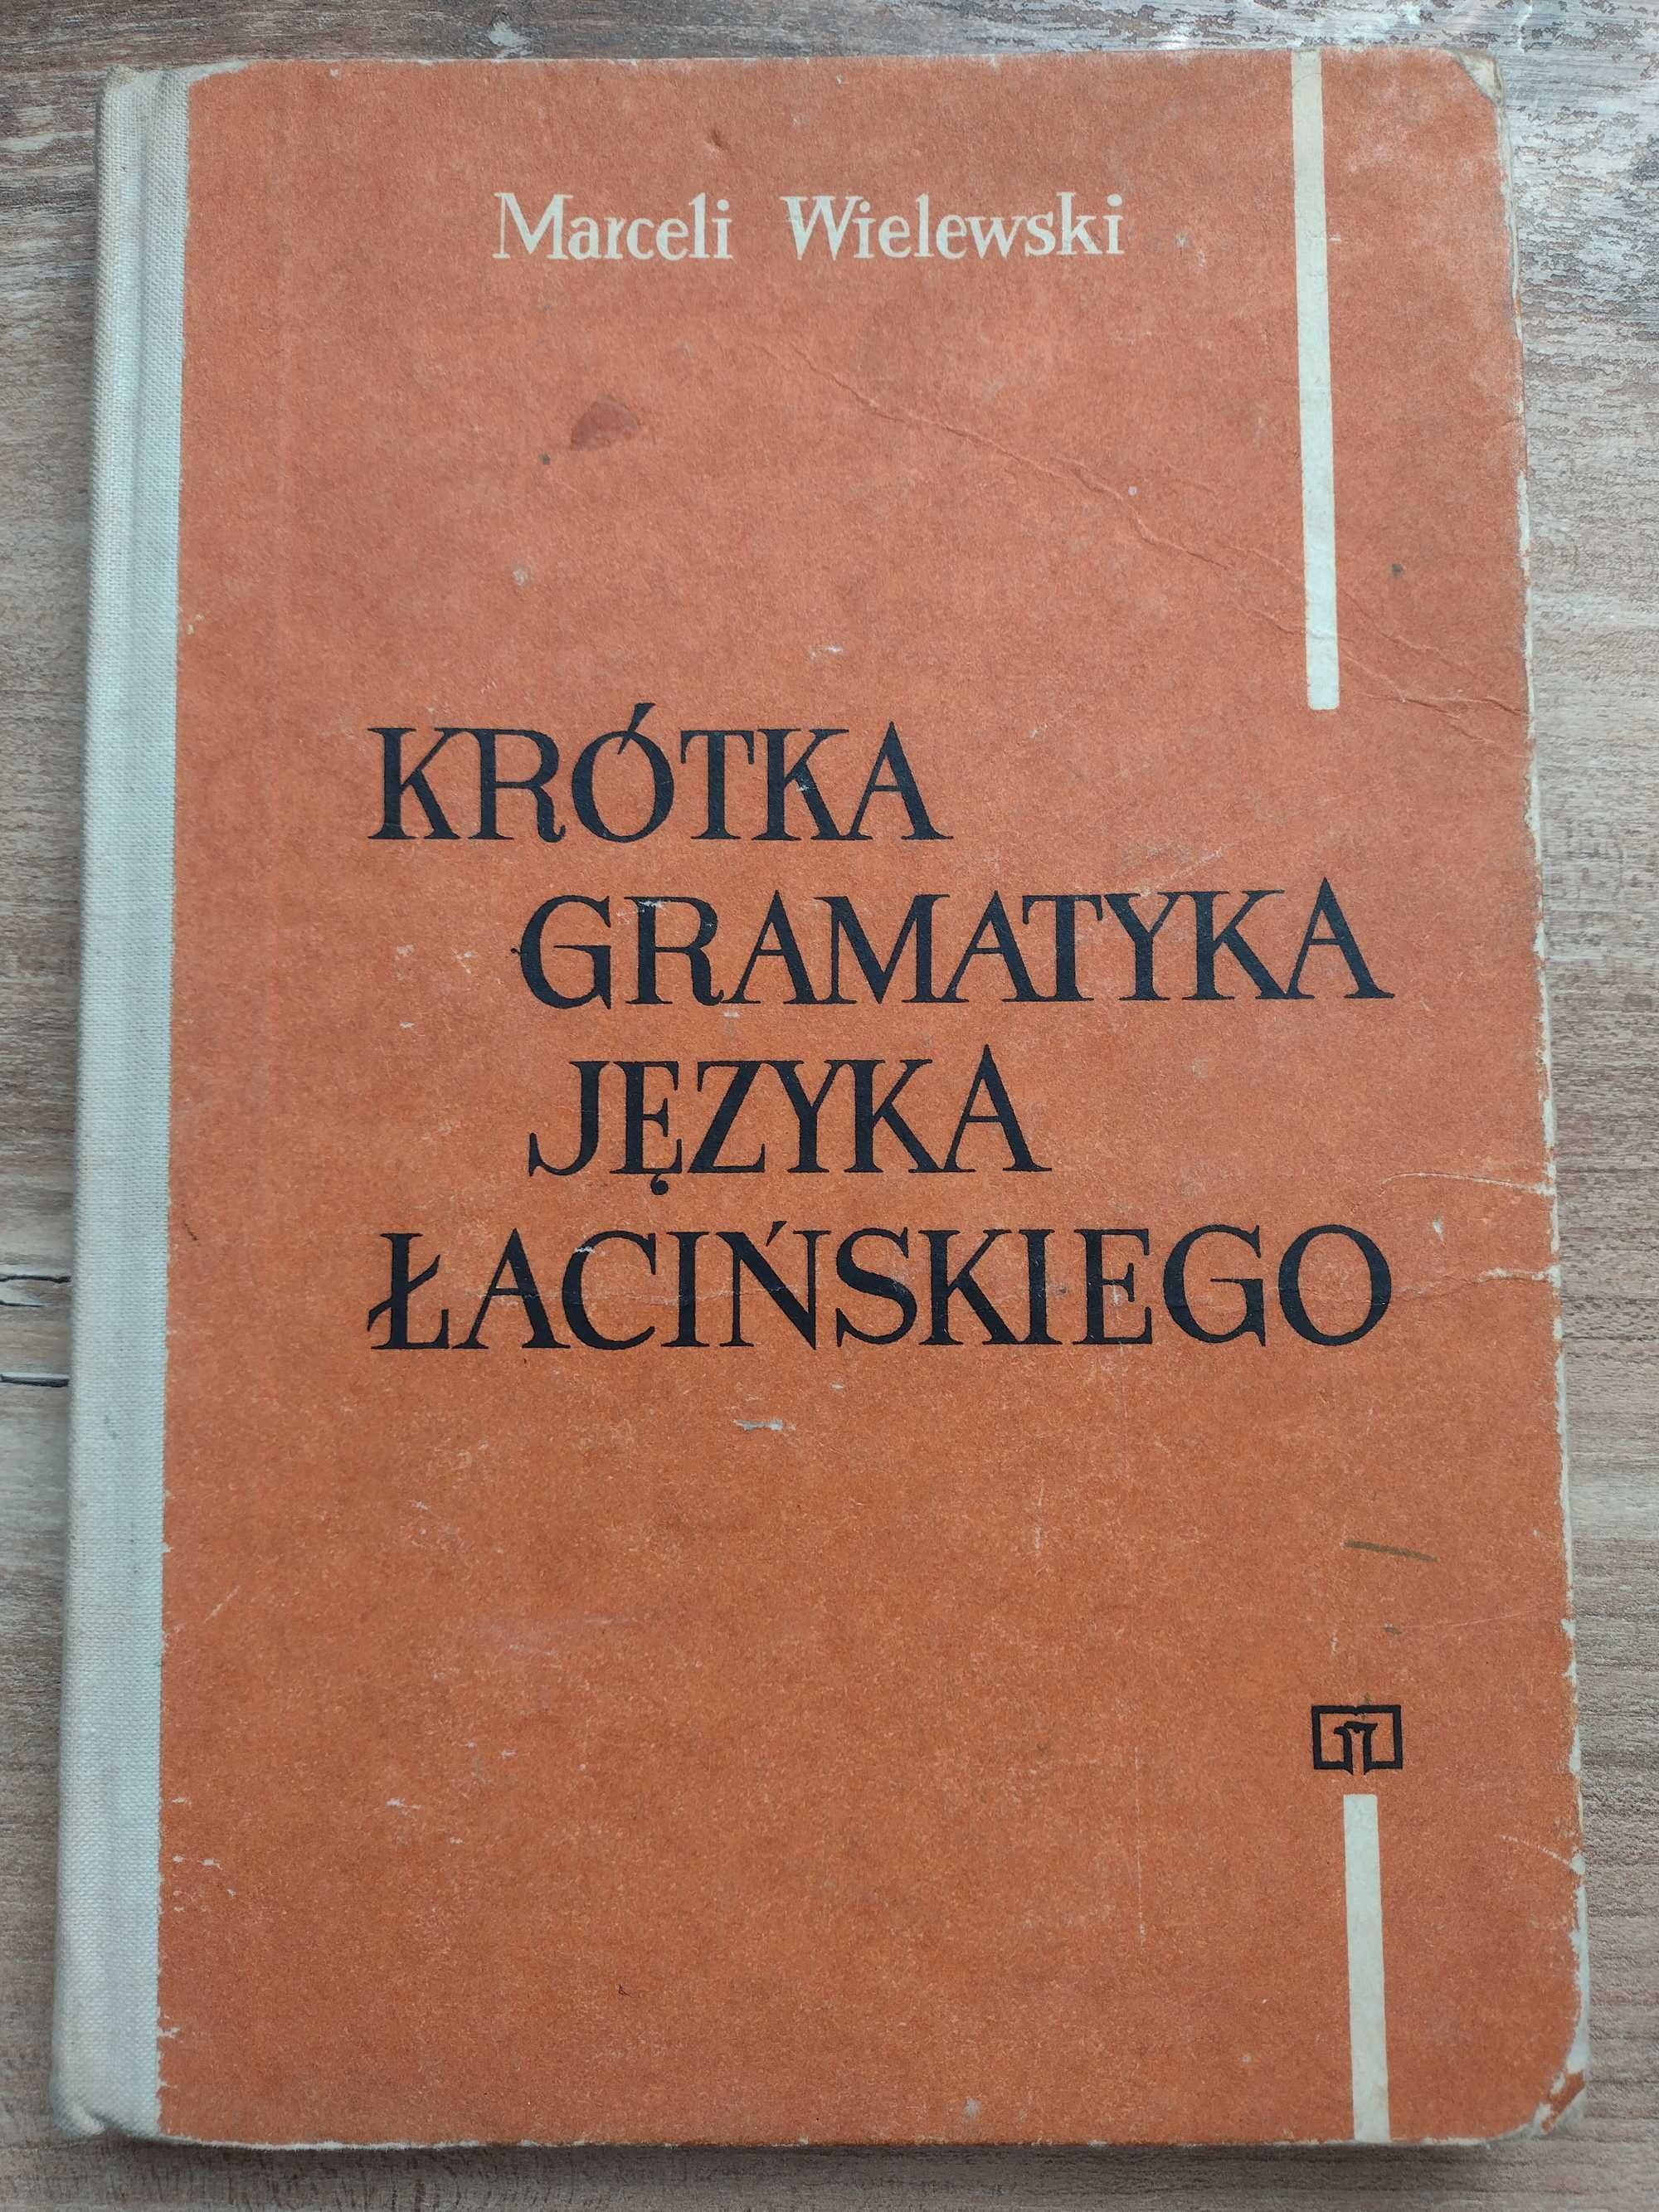 Marceli Wielewski - Krótka gramatyka języka łacińskiego 1978